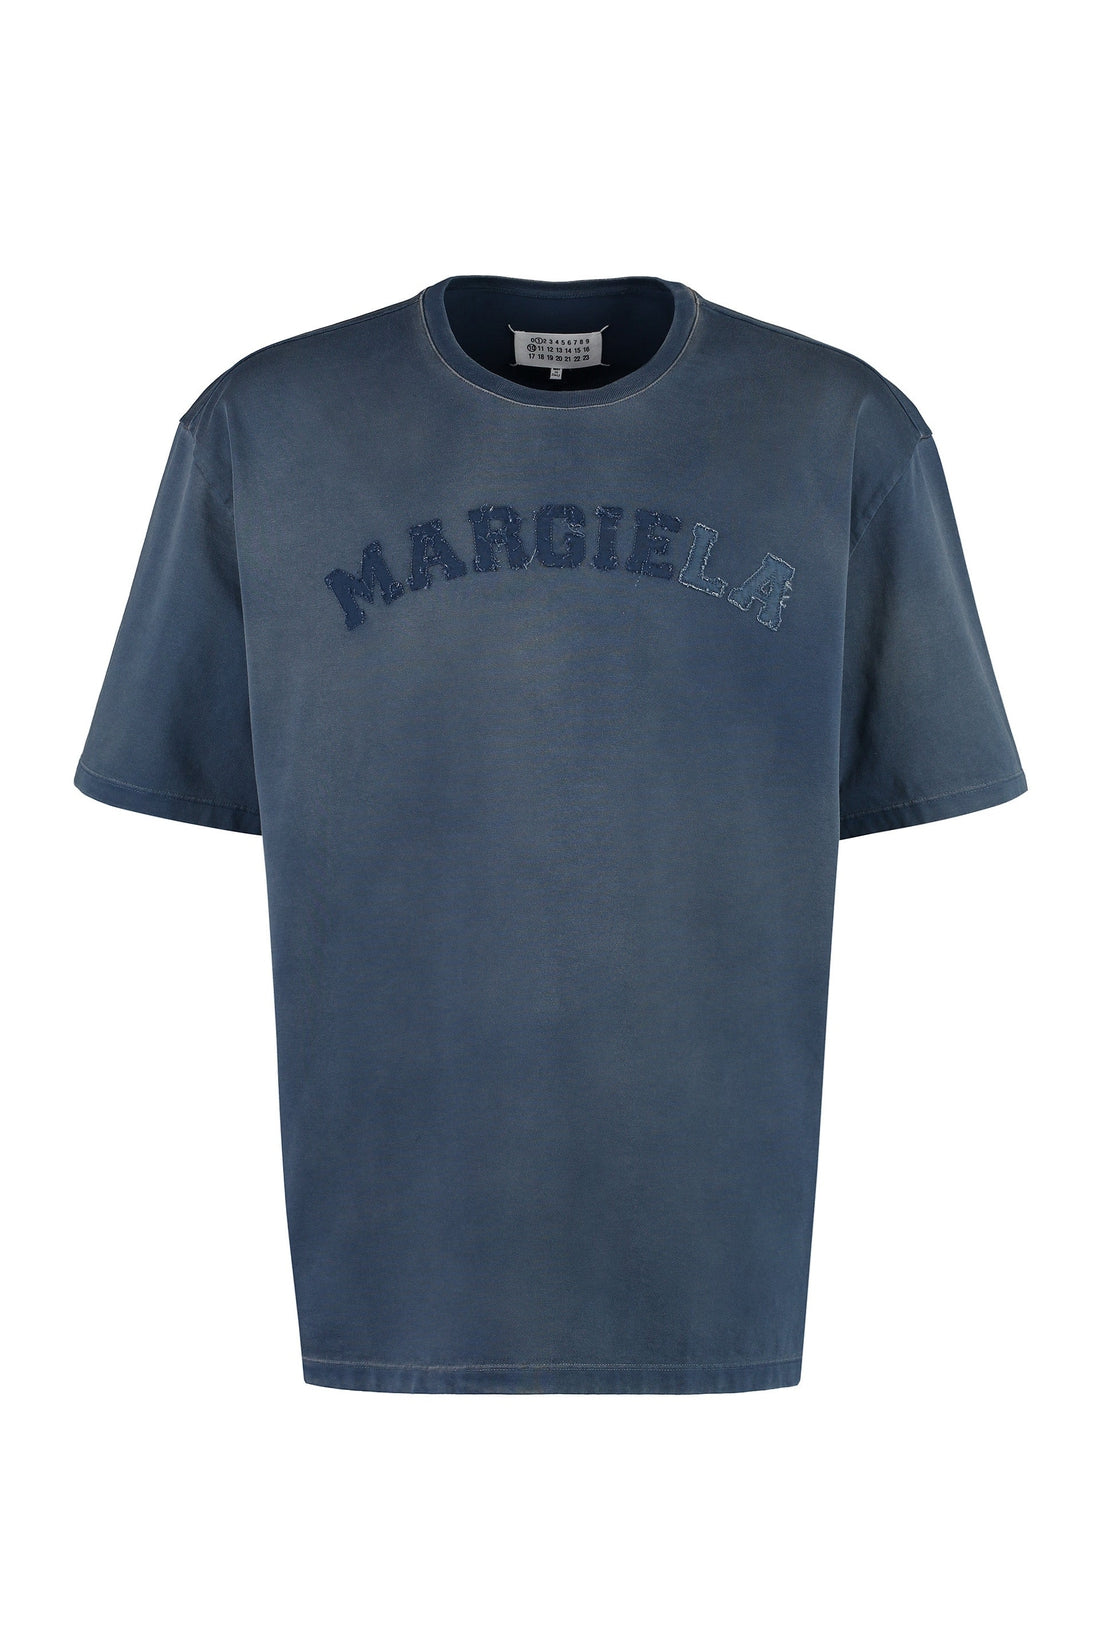 Maison Margiela-OUTLET-SALE-Logo cotton t-shirt-ARCHIVIST